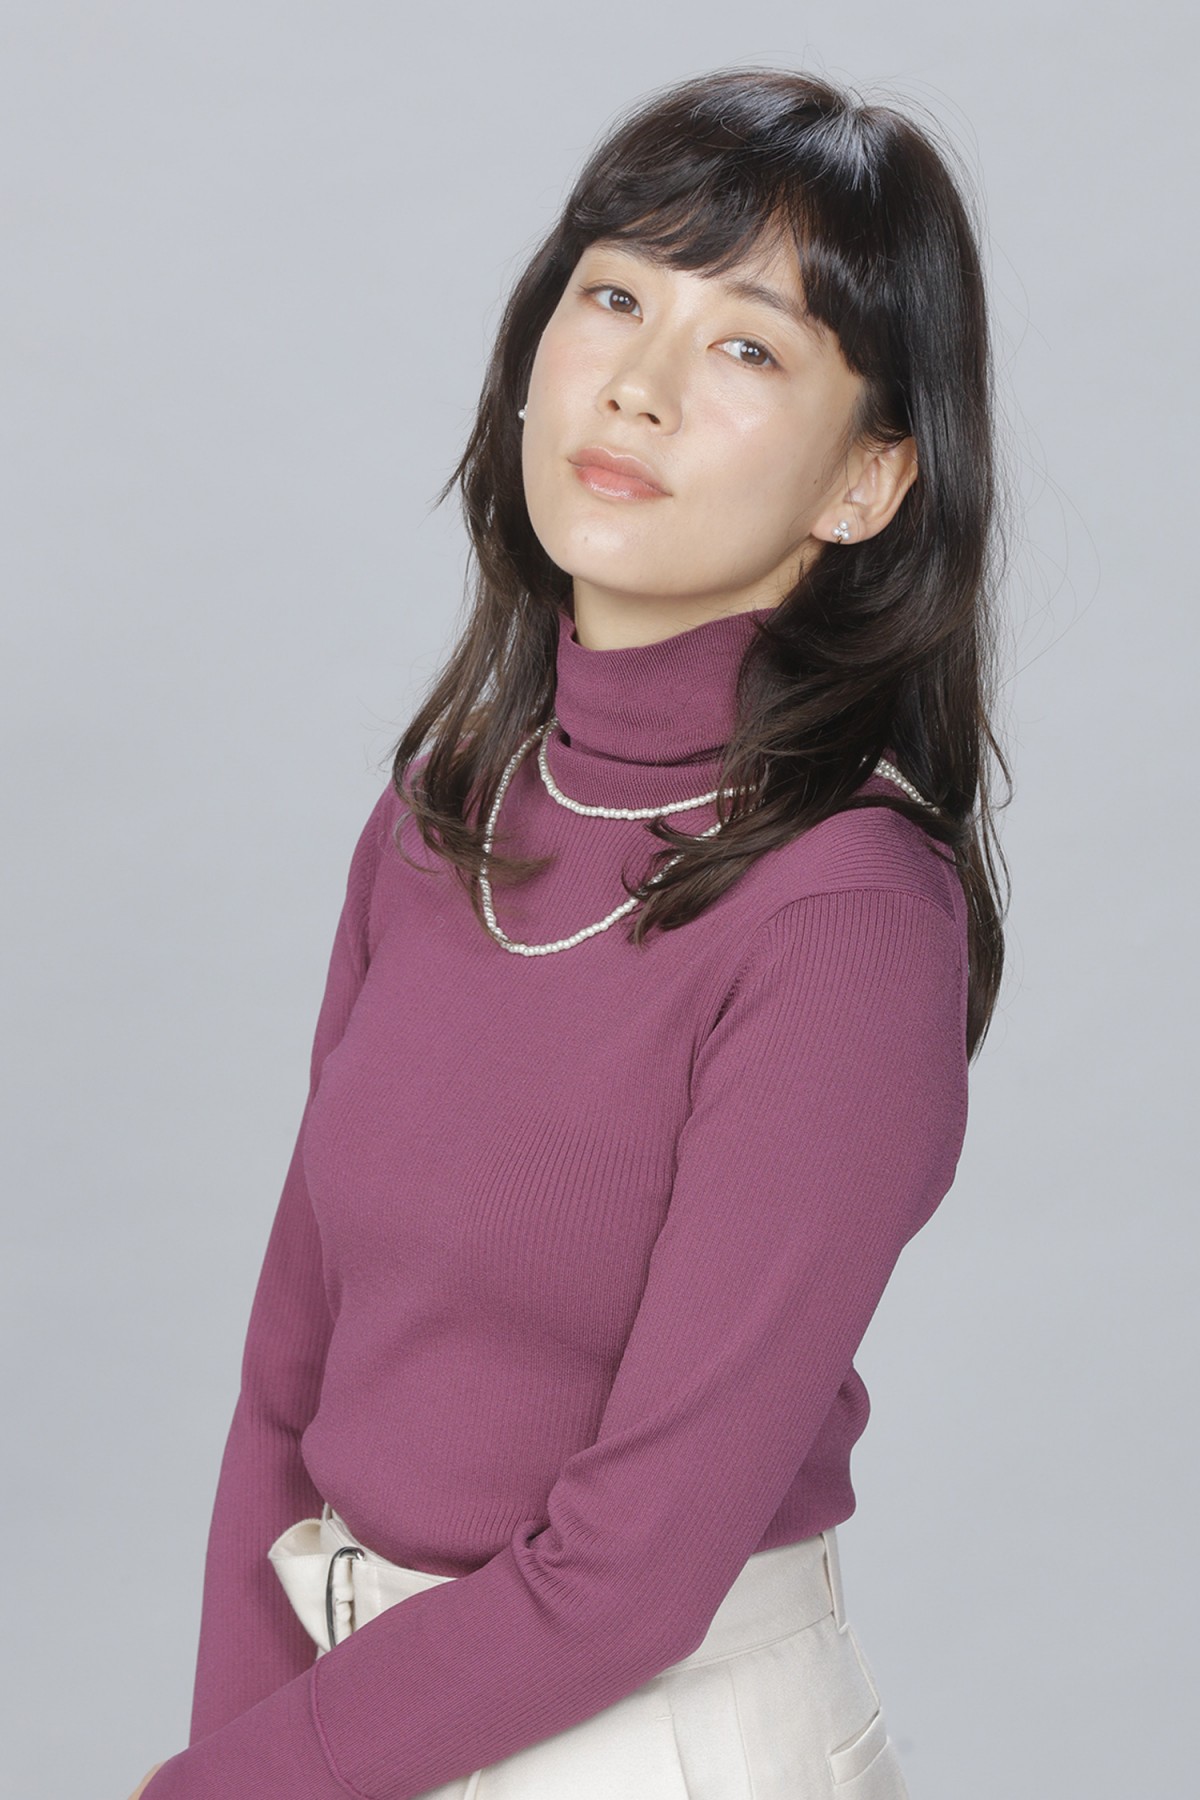 ドラマ『ナイルパーチの女子会』で主演を務める志村栄利子役の水川あさみ